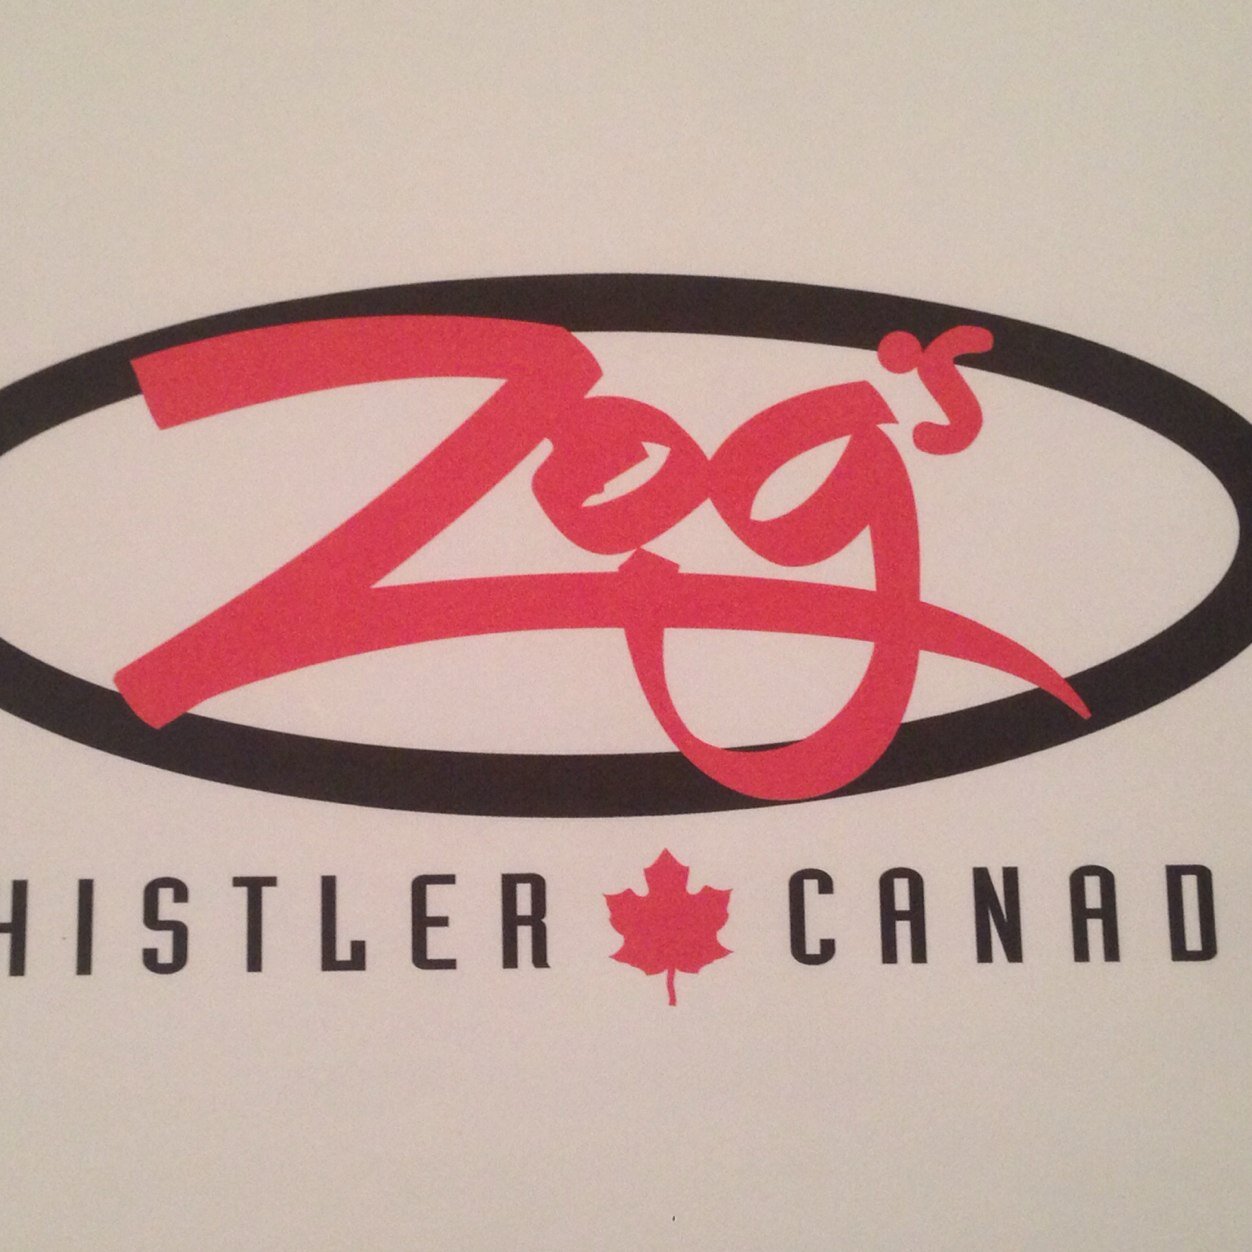 Zogs Whistler